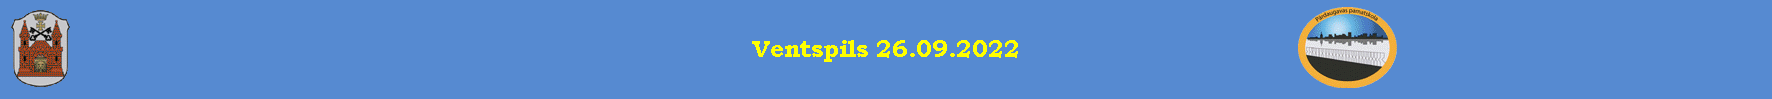 Ventspils 26.09.2022